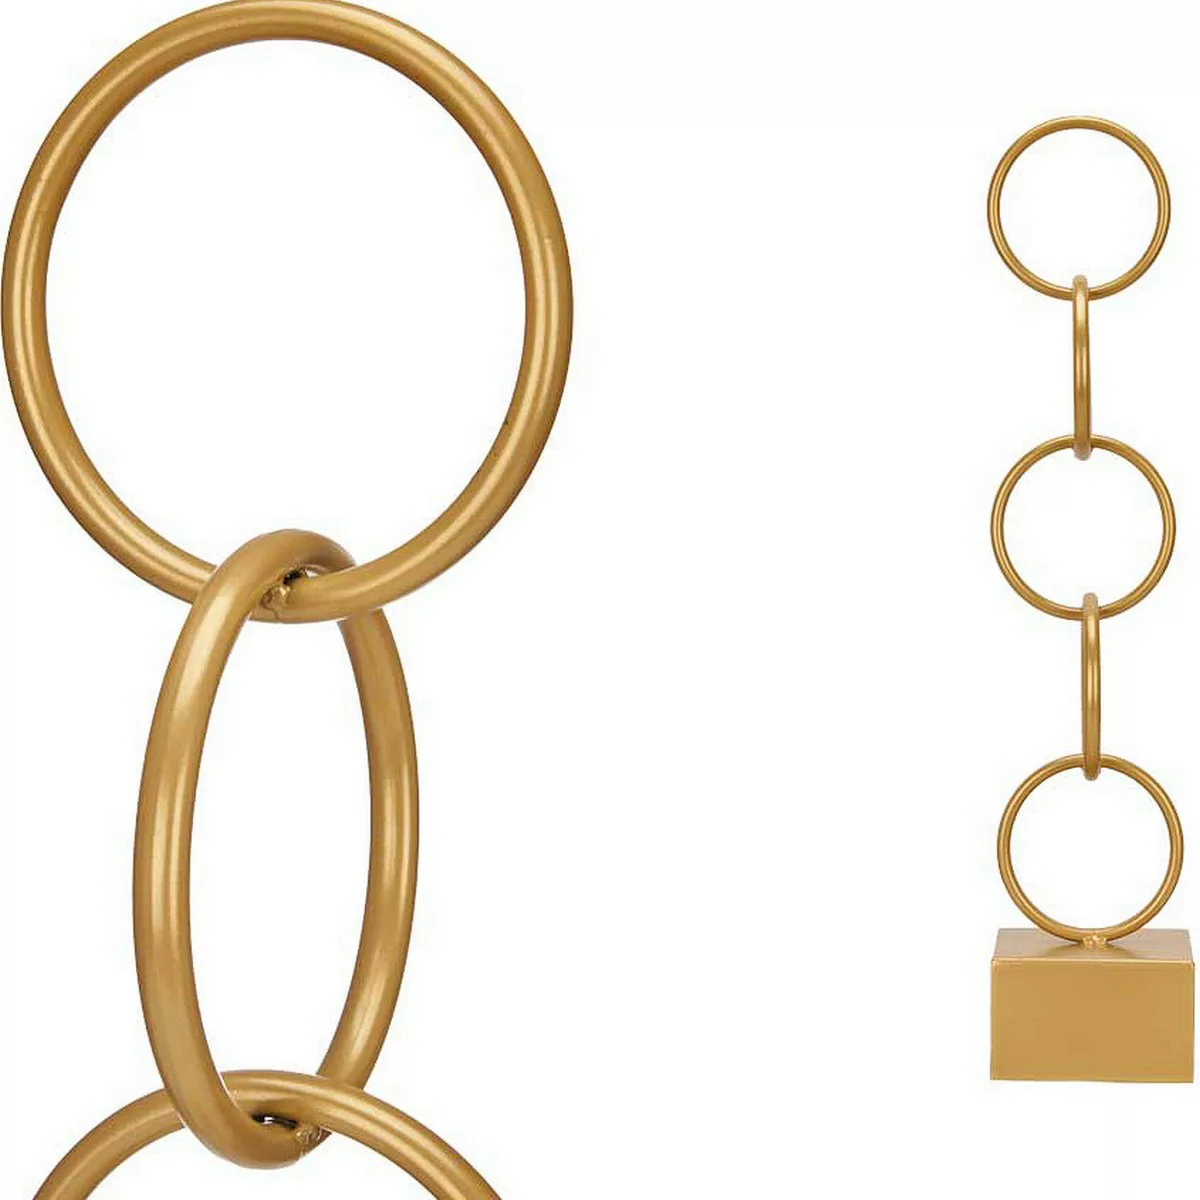 Deko-figur Ringe Golden Metall (12,5 X 60,5 X 12,5 Cm) günstig online kaufen